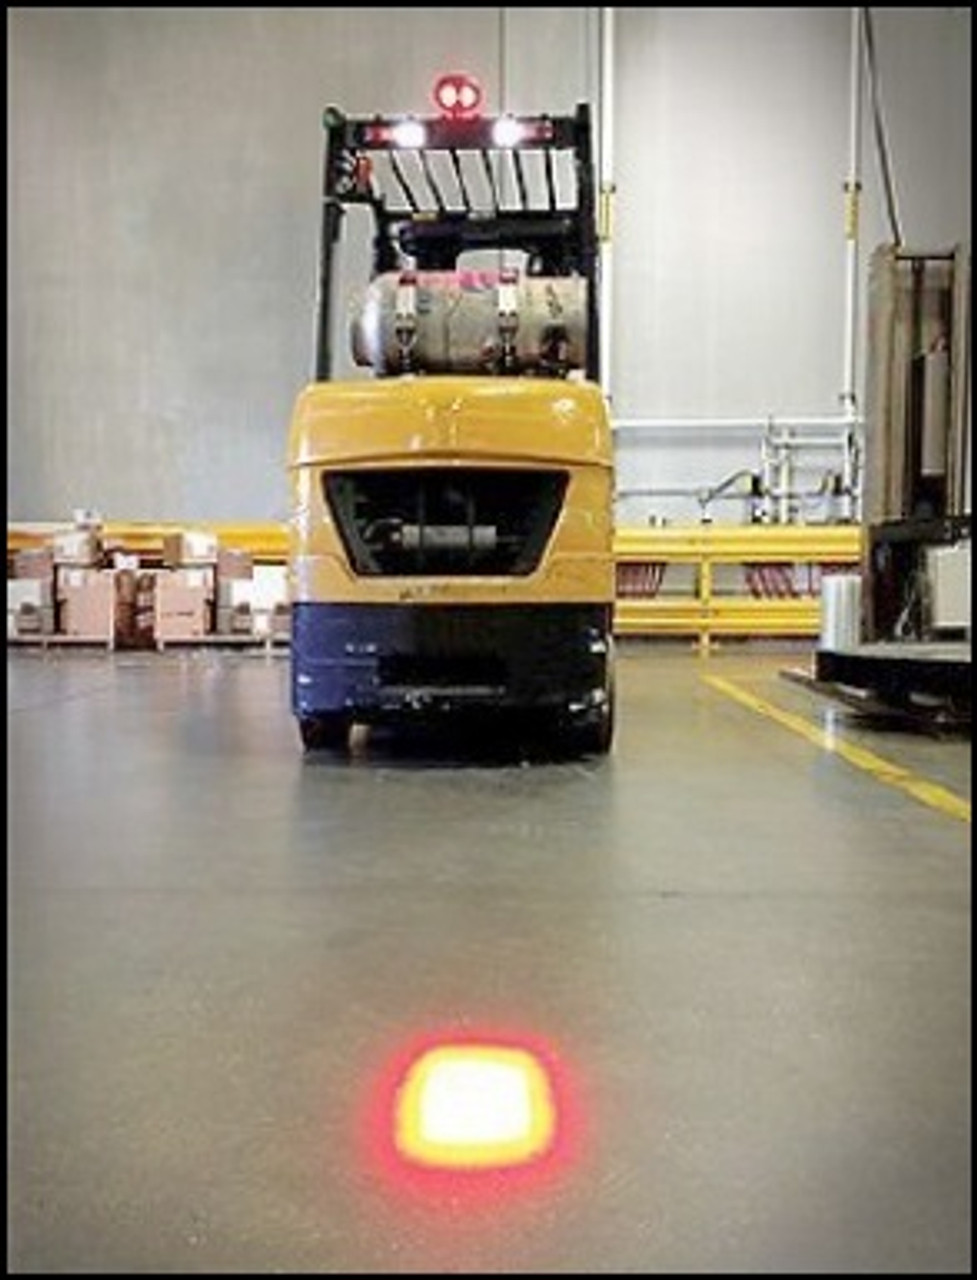 Red Forklift Safety Spot Light